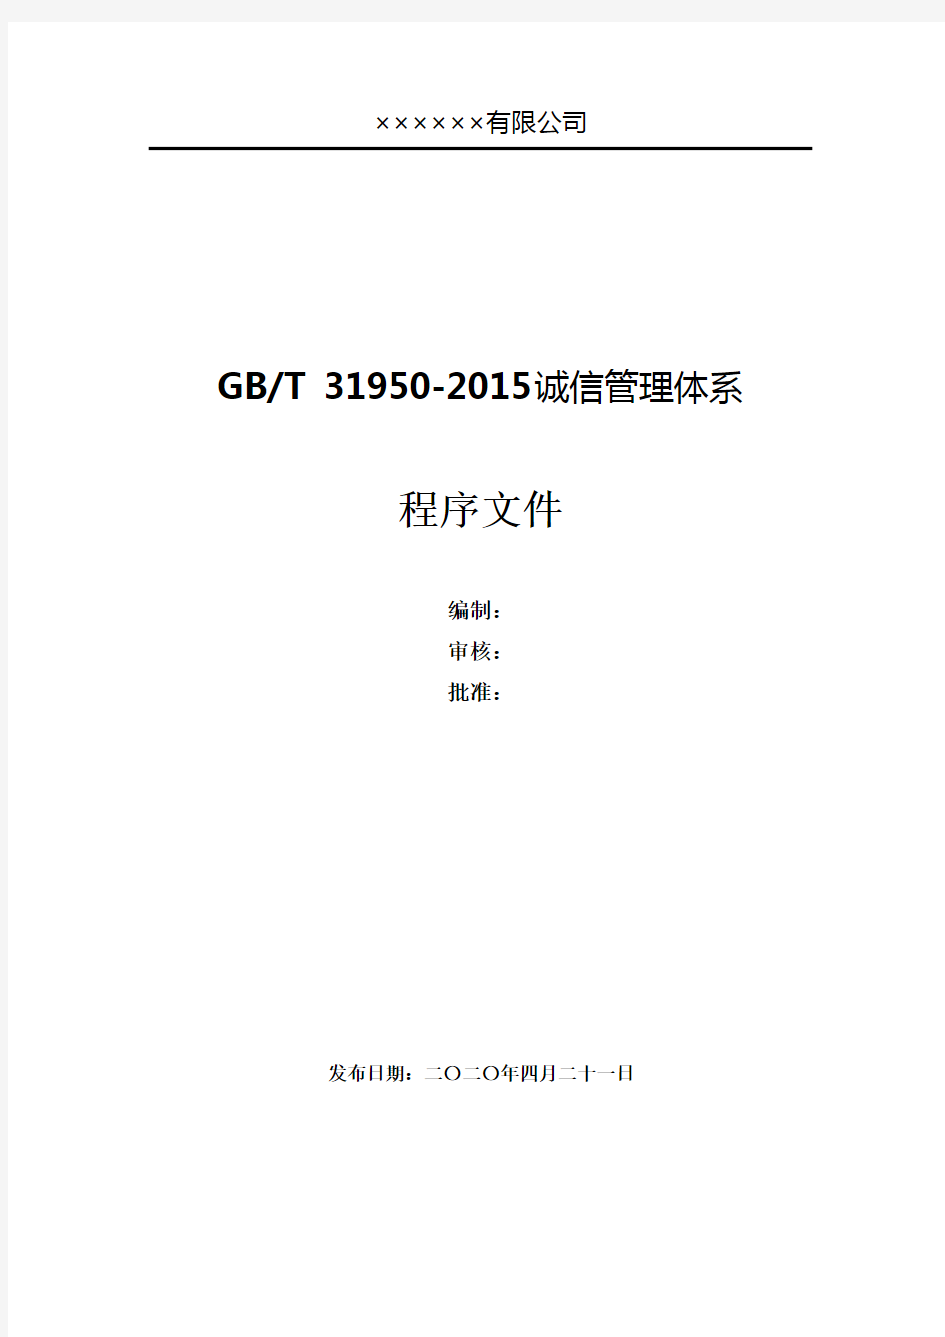 GBT31950-2015企业诚信管理体系全套程序文件汇编